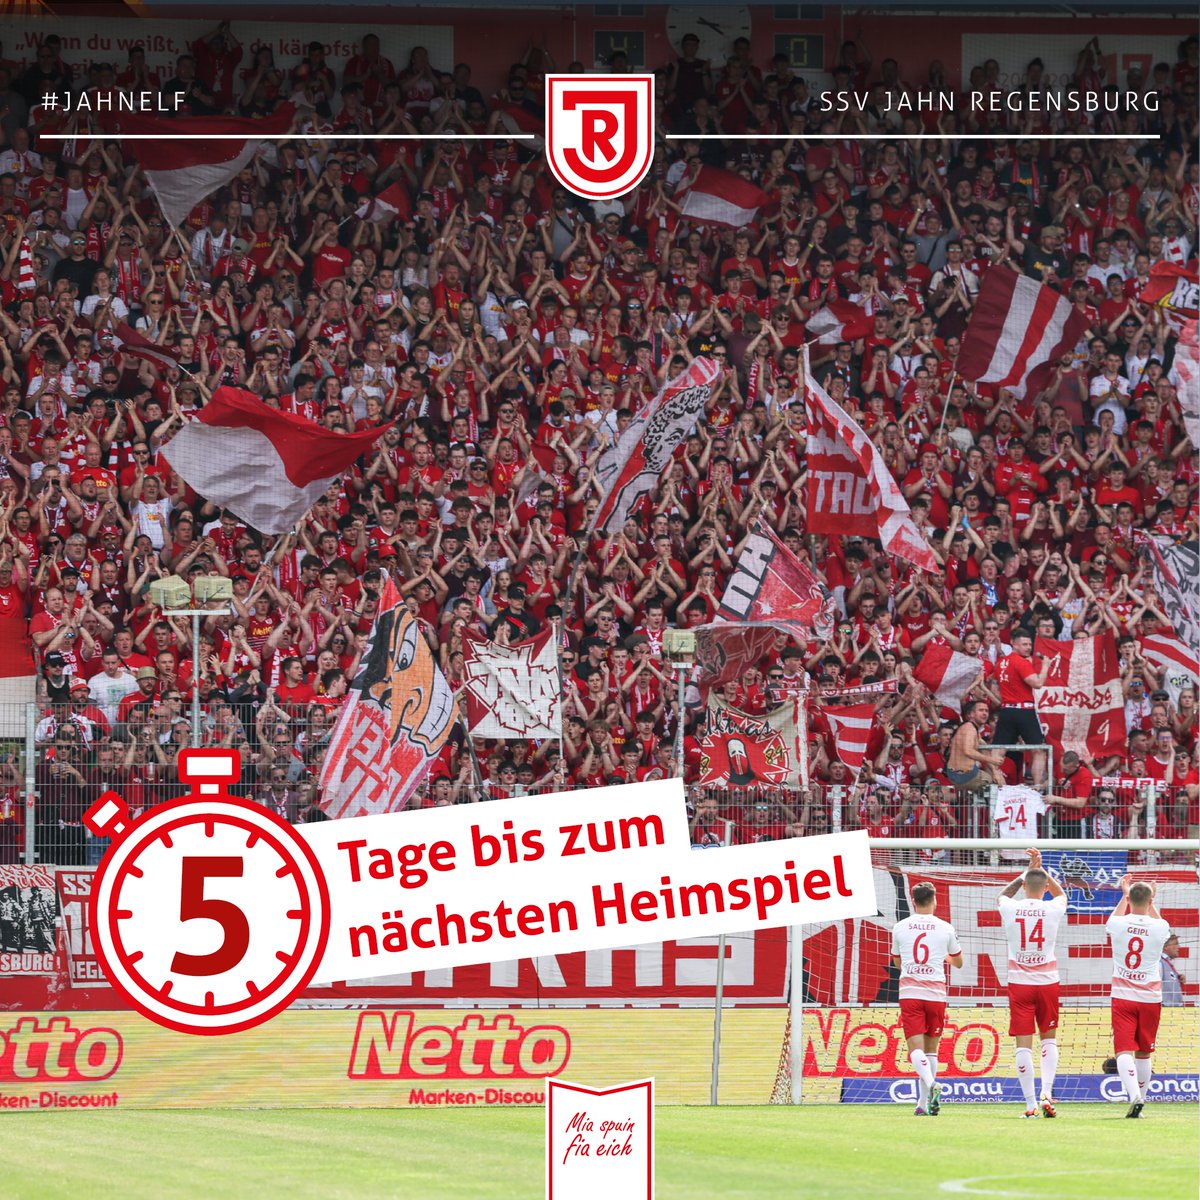 𝗘𝗻𝗱𝘀𝗽𝘂𝗿𝘁 🔥 Nur noch 5 Tage bis zum Heimspiel gegen den 1. FC Saarbrücken. ➔ 𝗛𝗶𝗻𝘄𝗲𝗶𝘀: Alle verfügbaren Sitz- und Stehplätze im Heimbereich sind bereits vergriffen. Mehr Infos findet Ihr unter ssv-jahn.de 🏟️